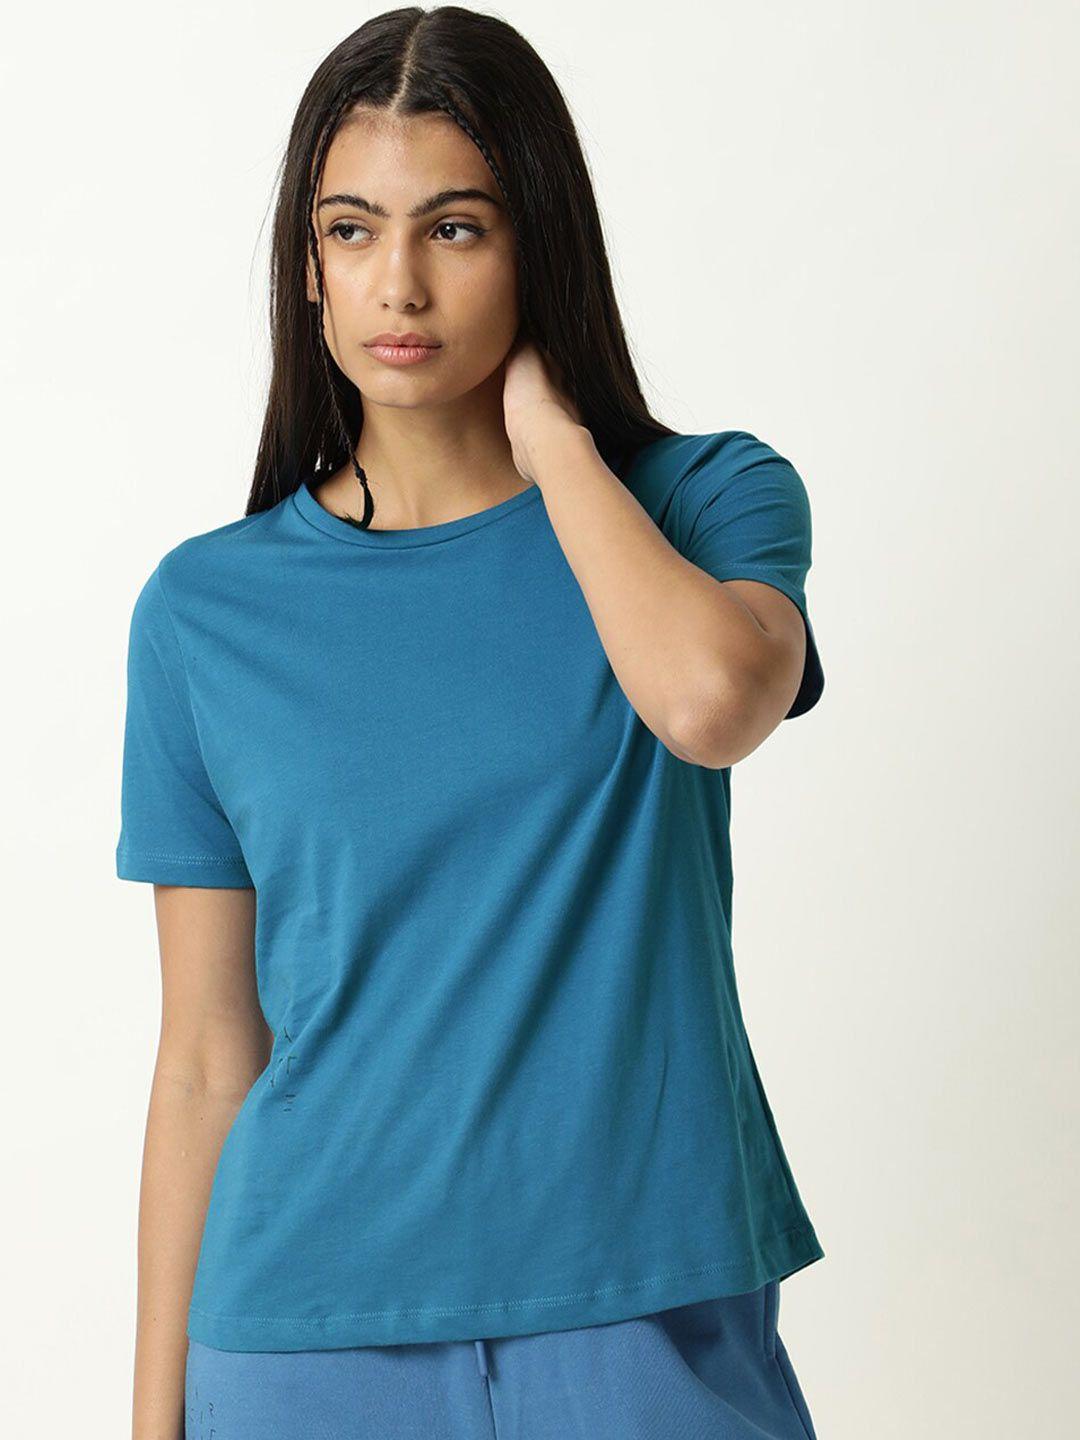 articale women blue solid slim fit cotton t-shirt